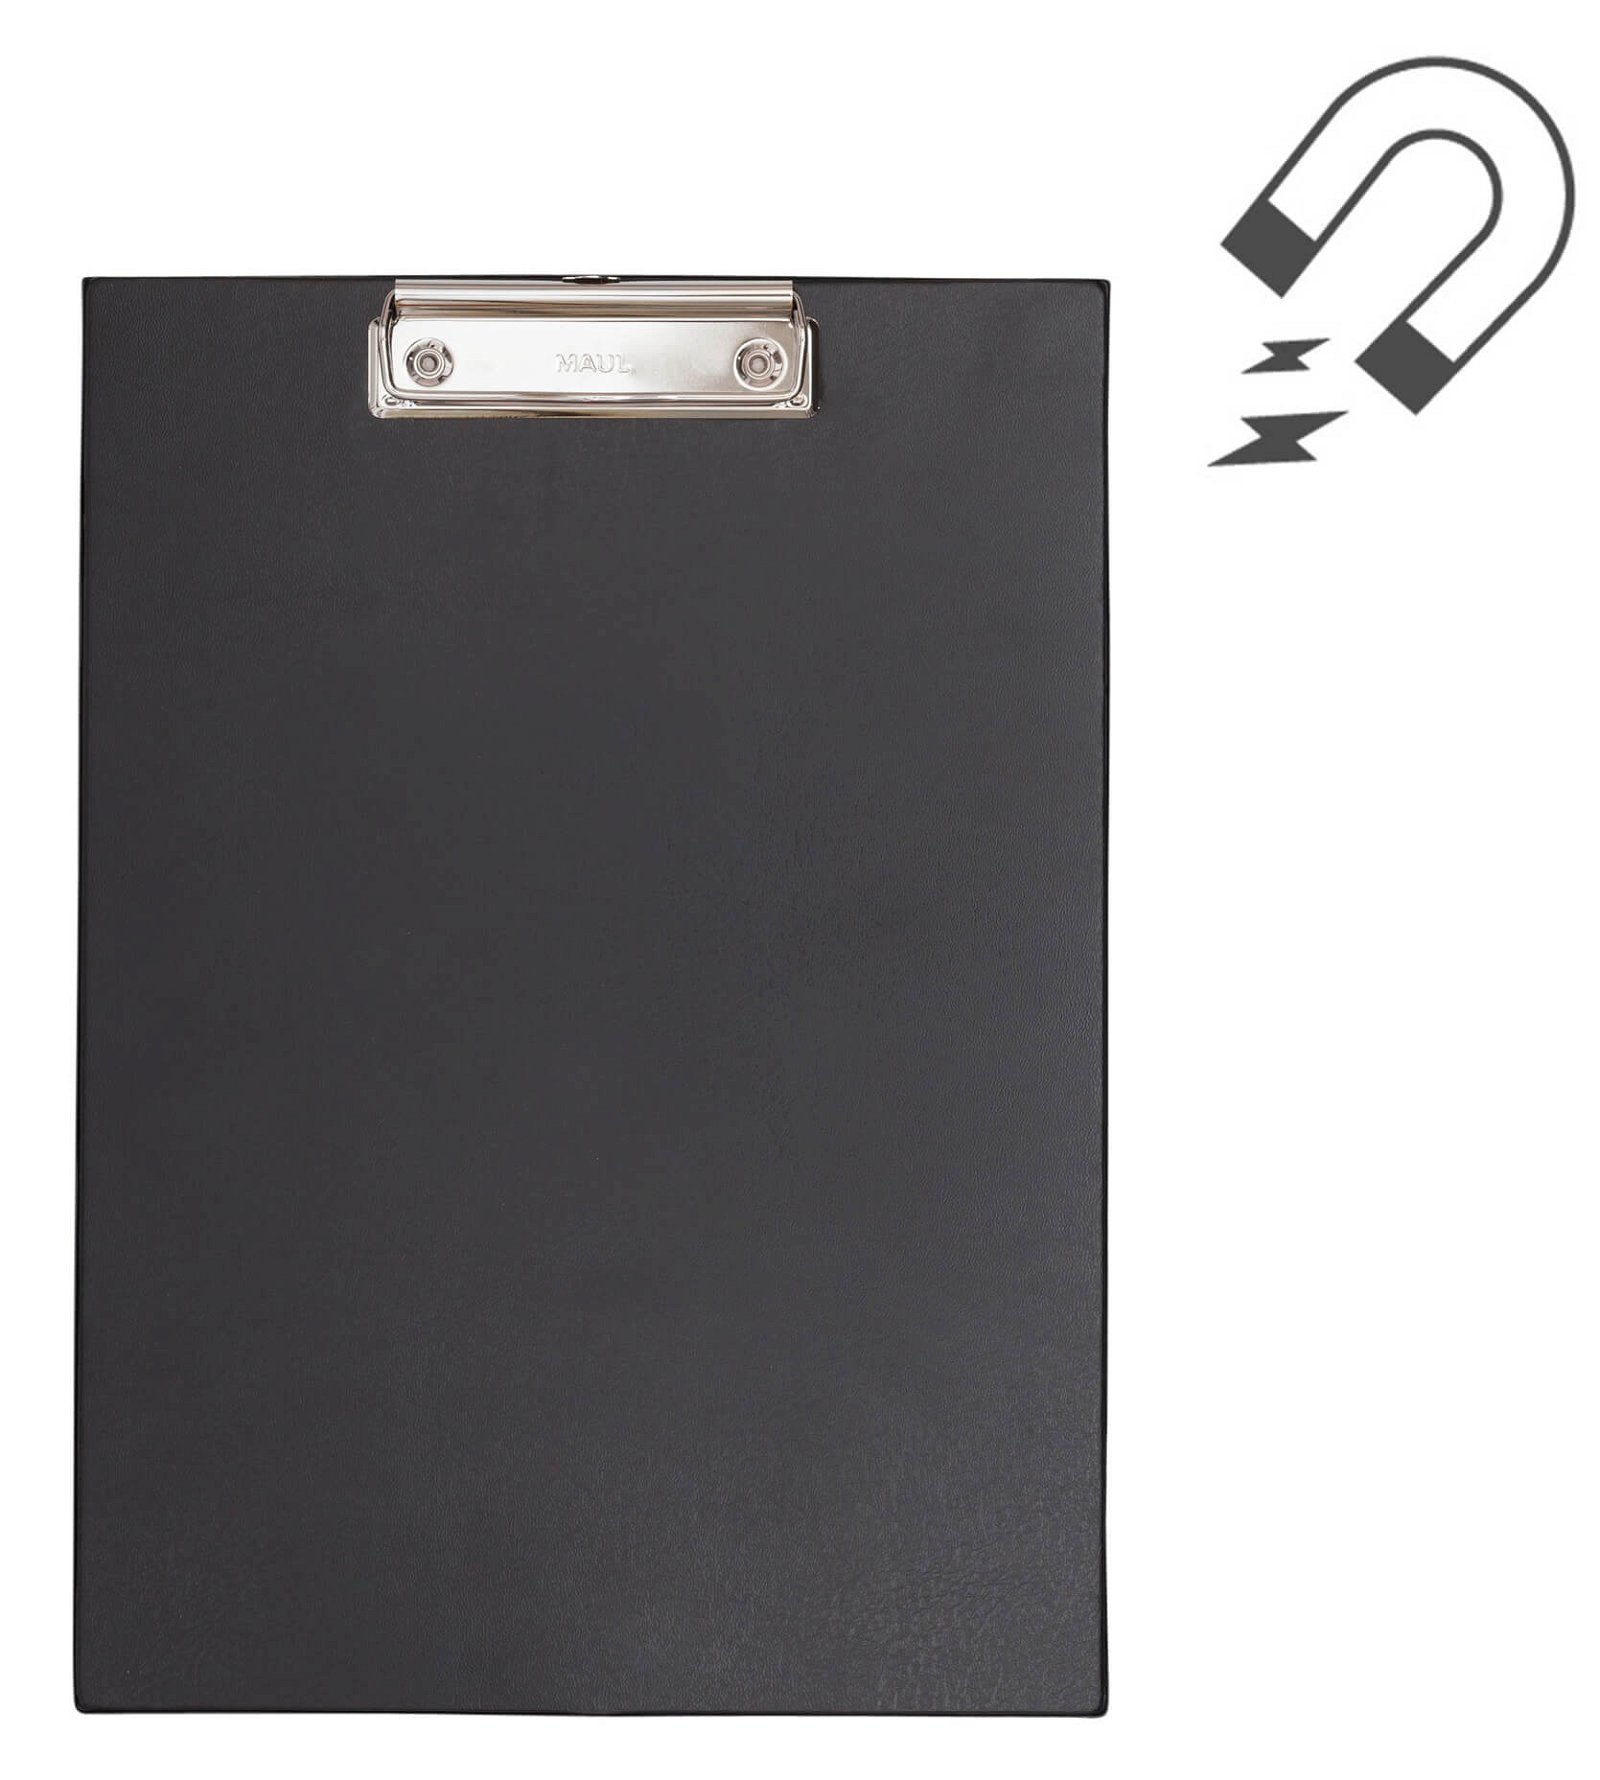 A4 Schreibplatte mit Folien- überzug und 2 Neodym-Magneten, schwarz